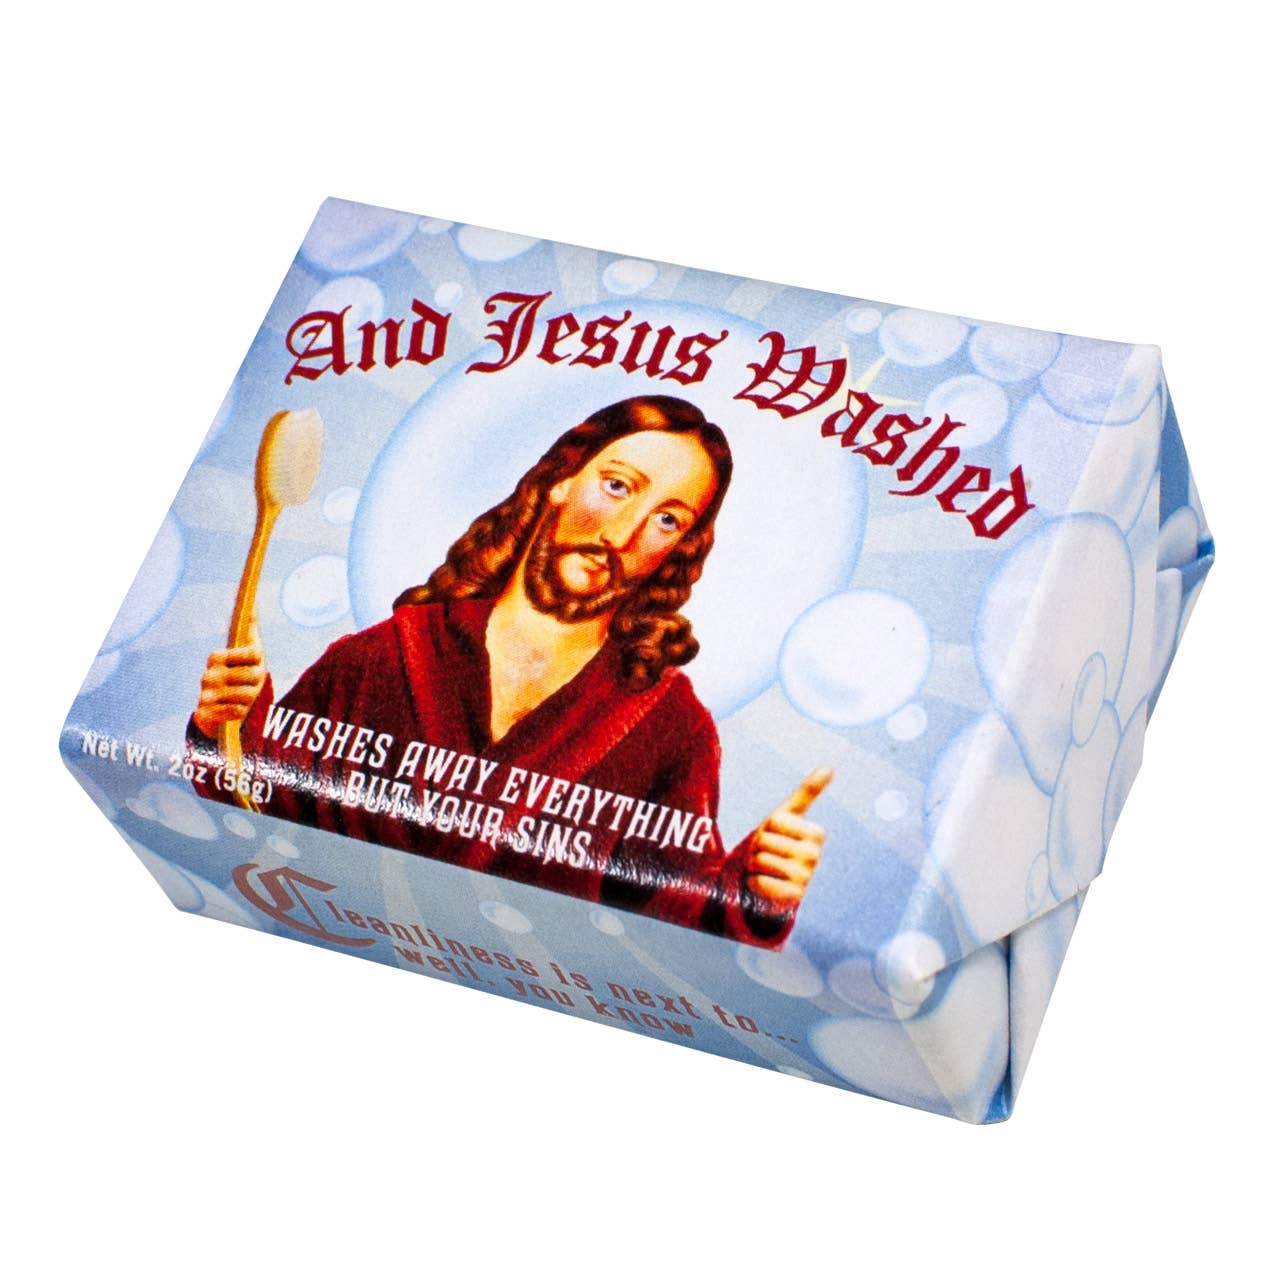 And Jesus Washed Soap - Hidden Gems Novelty